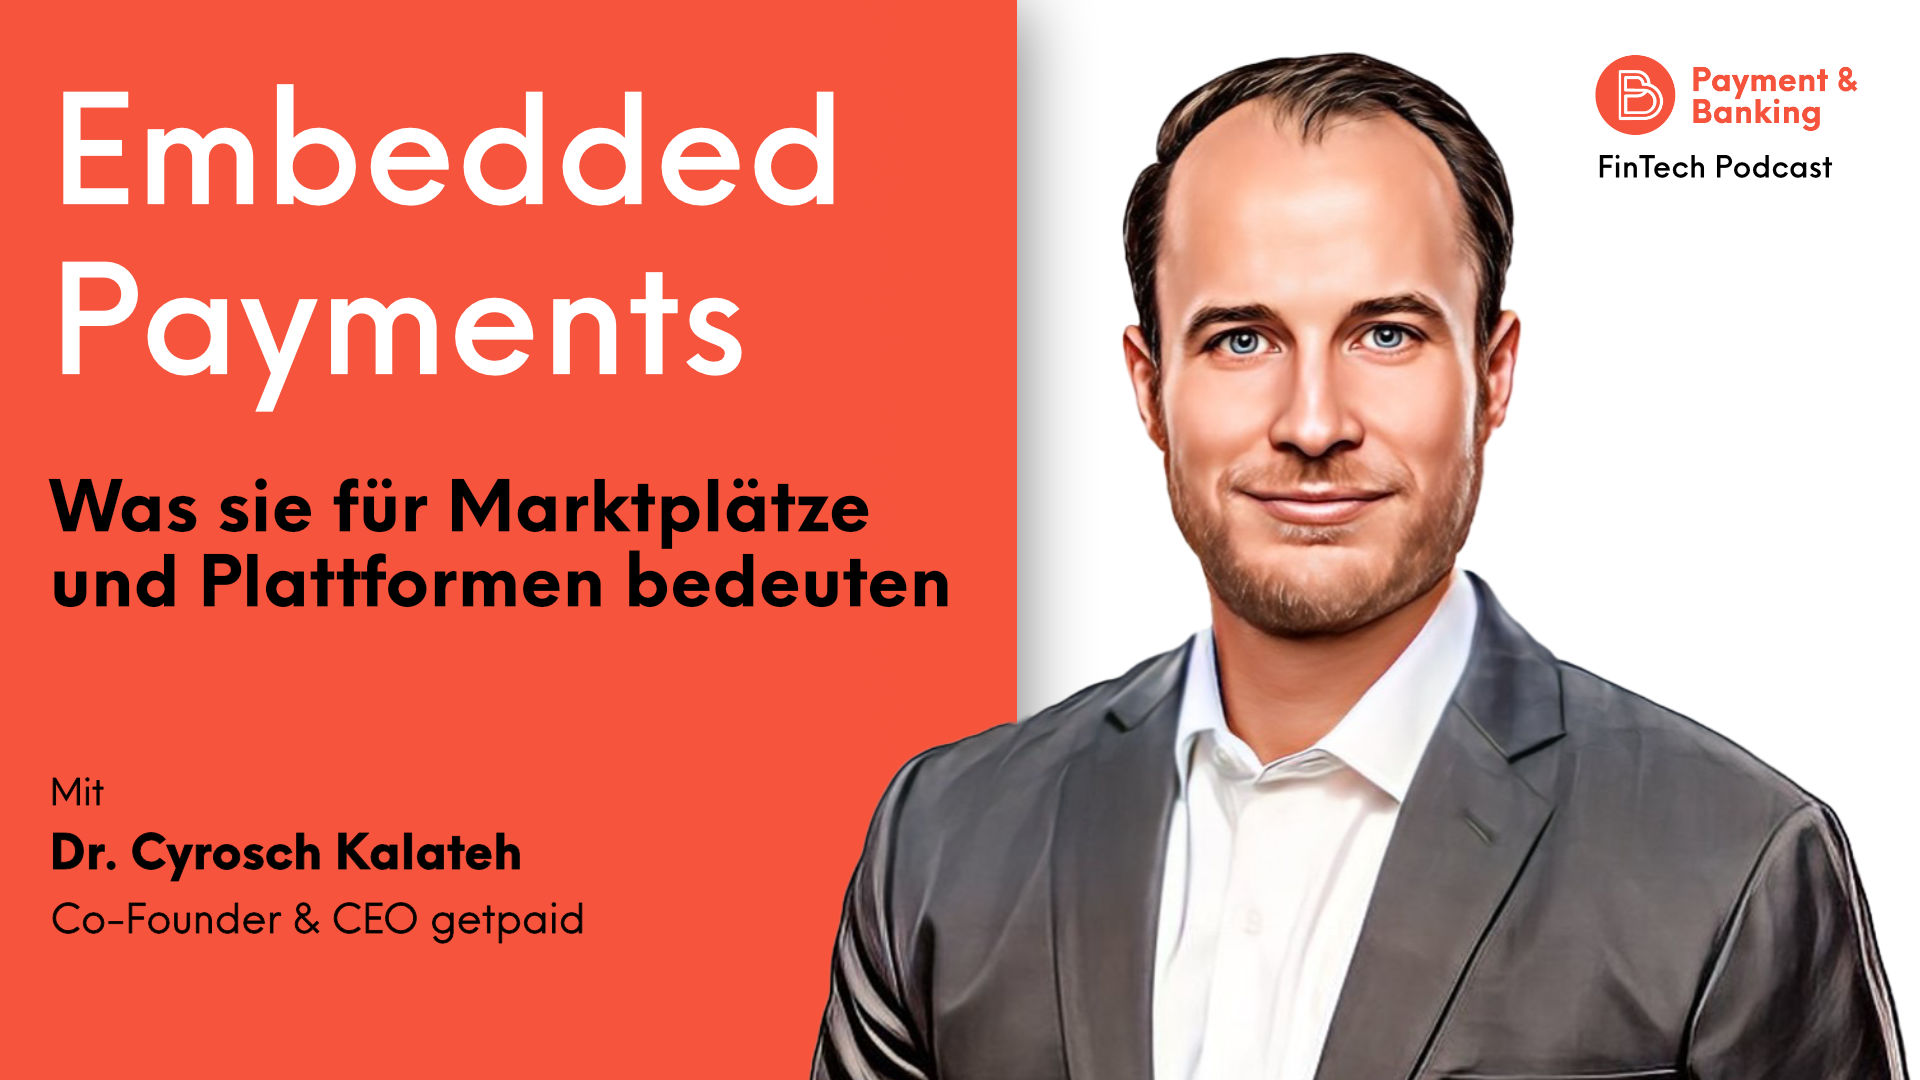 Dr. Cyrosch Kalateh, Co-Founder & CEO getpaid, spricht über die Vorteile von Embedded Payments für Marktplätze und Plattformen.